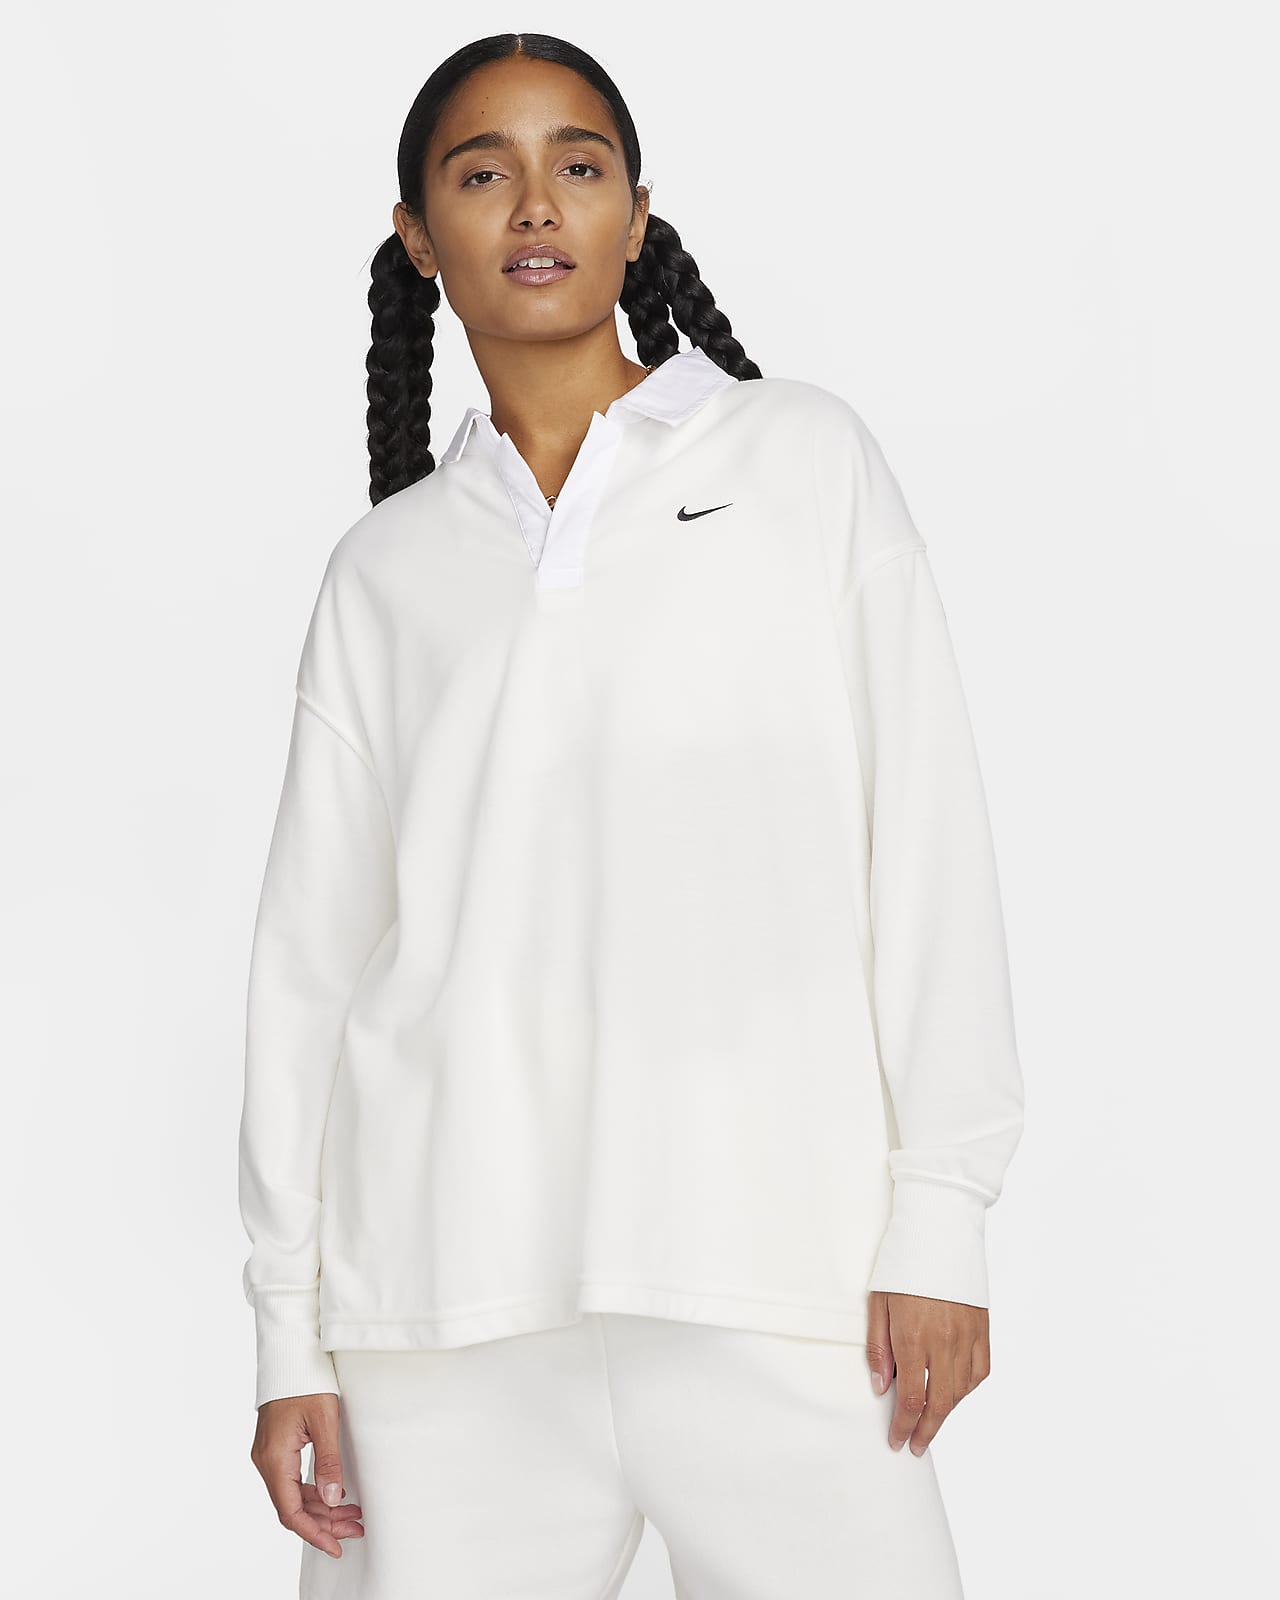 Γυναικεία μακρυμάνικη μπλούζα πόλο σε φαρδιά γραμμή Nike Sportswear Essential